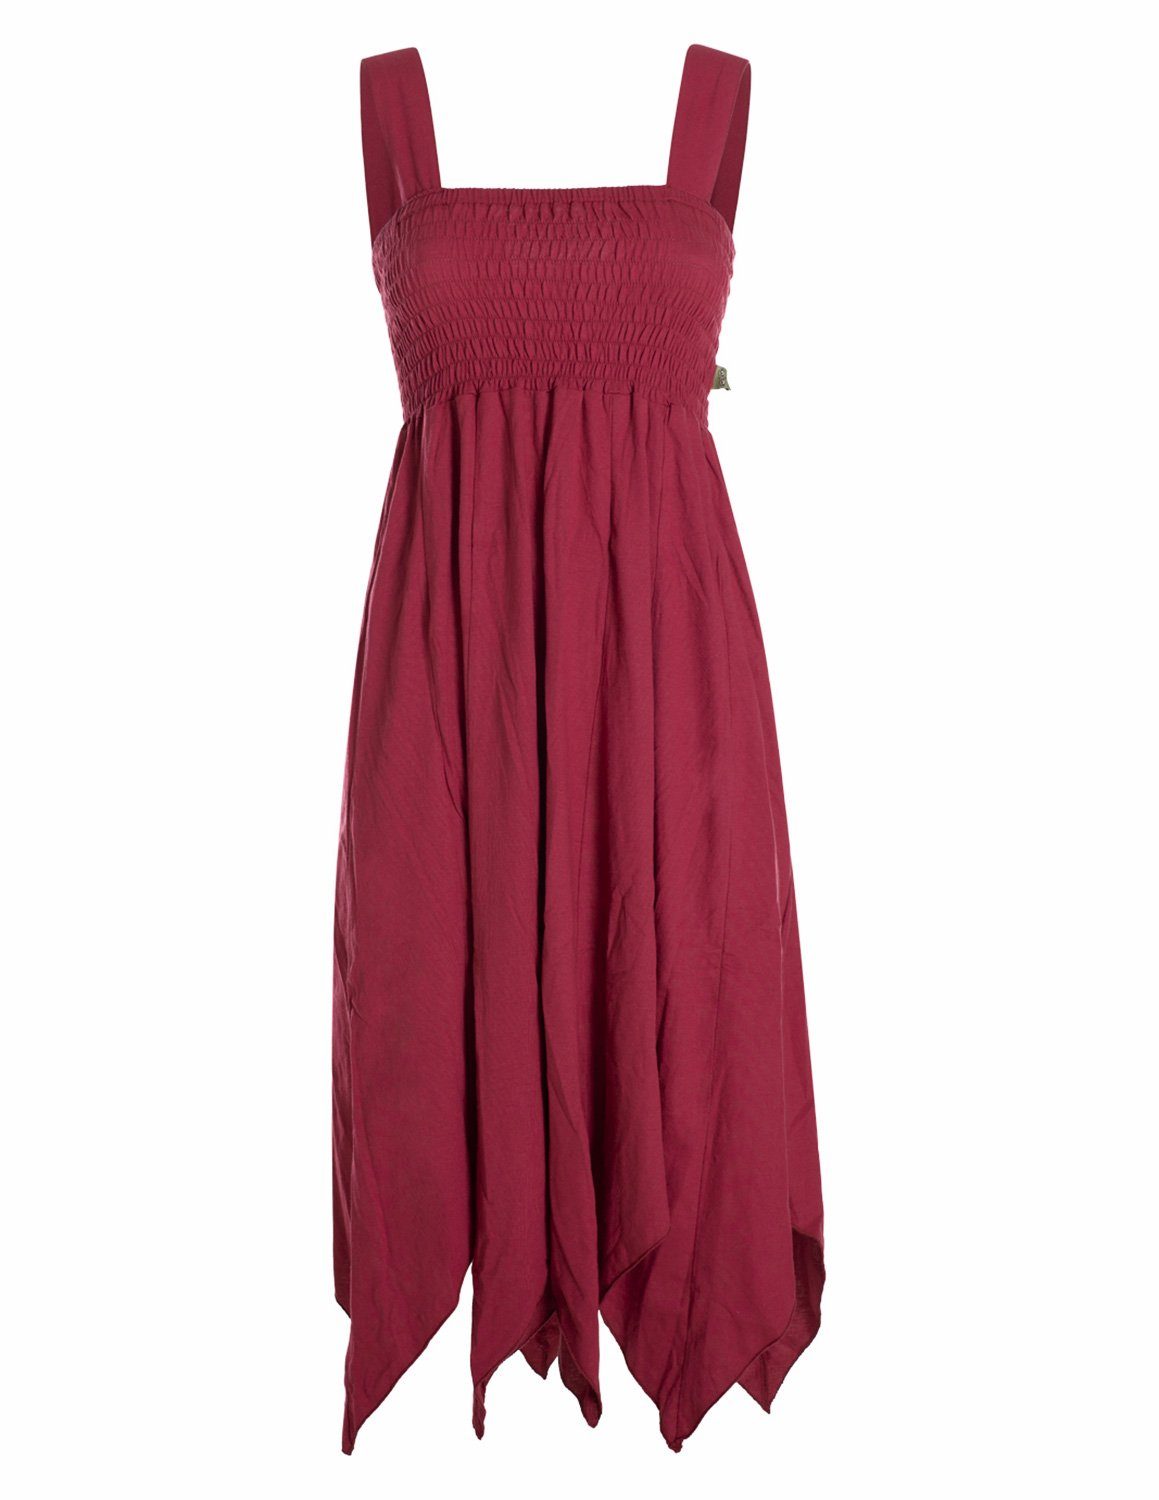 Vishes Zipfelkleid Langes Sommerkleid aus Bio Baumwolle mit Zipfeln und breiten Trägern Goa, Hippie, Style, Strandkleid dunkelrot | Sommerkleider